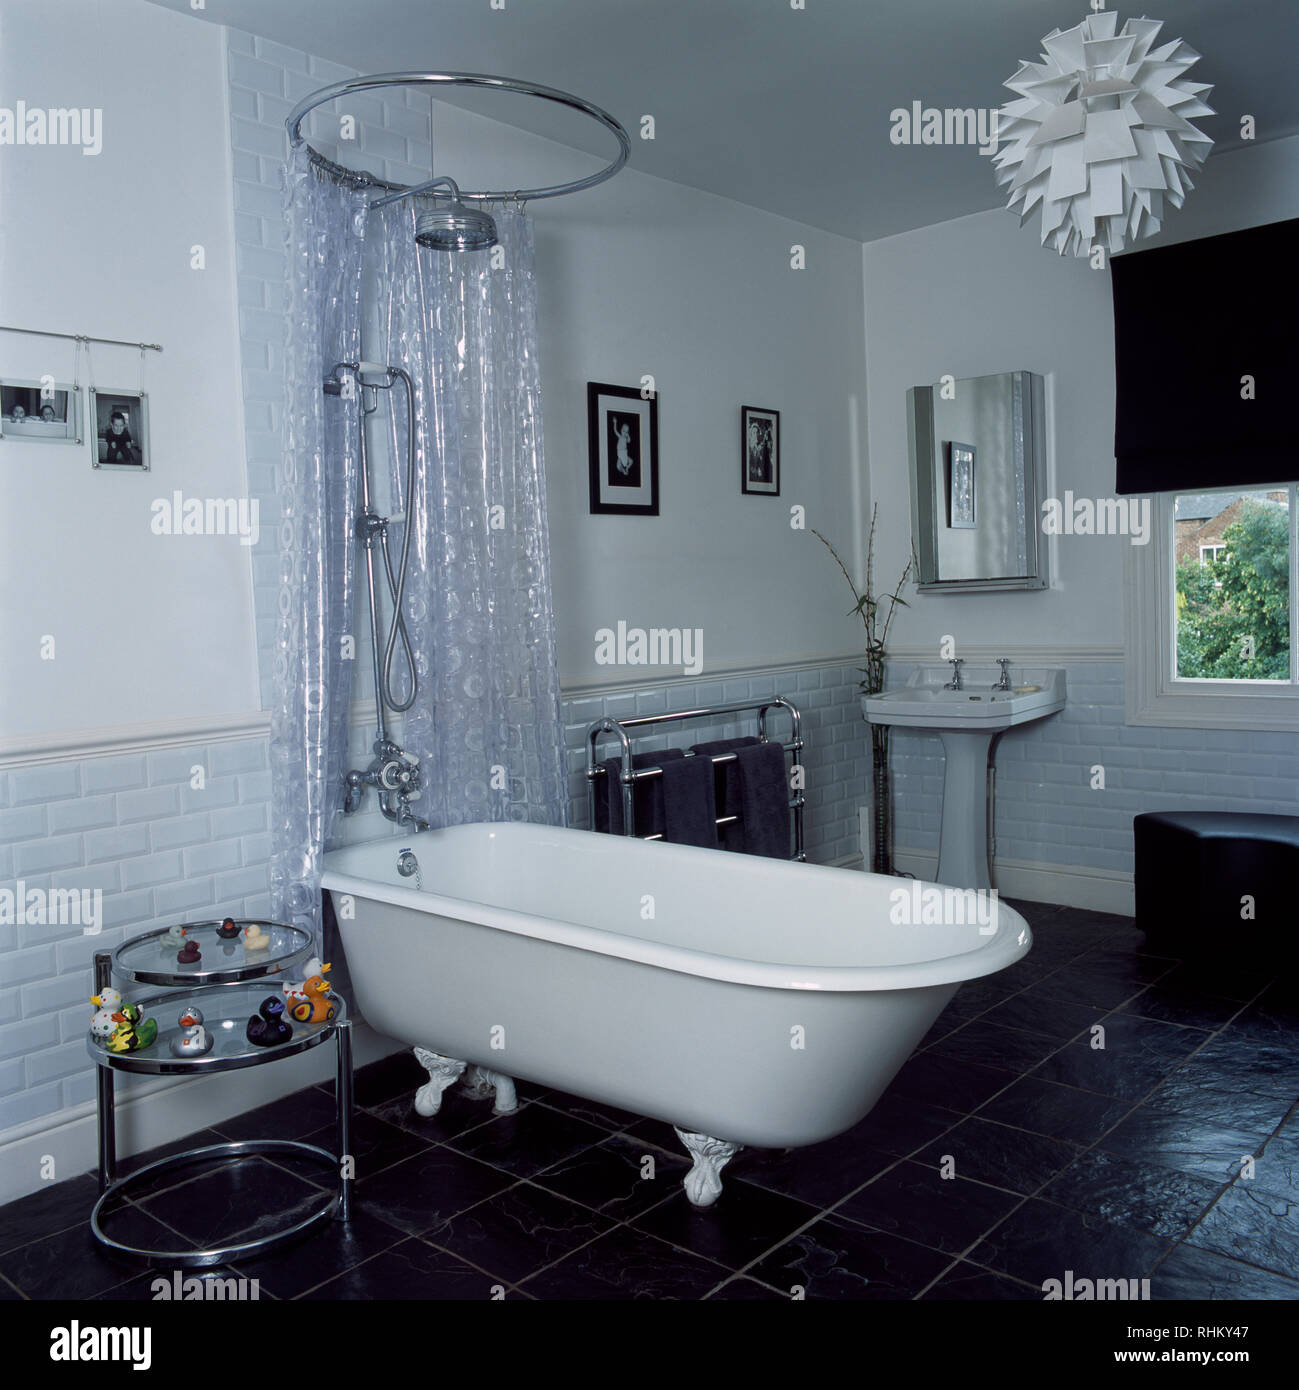 Cortina de ducha de plástico transparente encima del rodillo baño superior  Fotografía de stock - Alamy